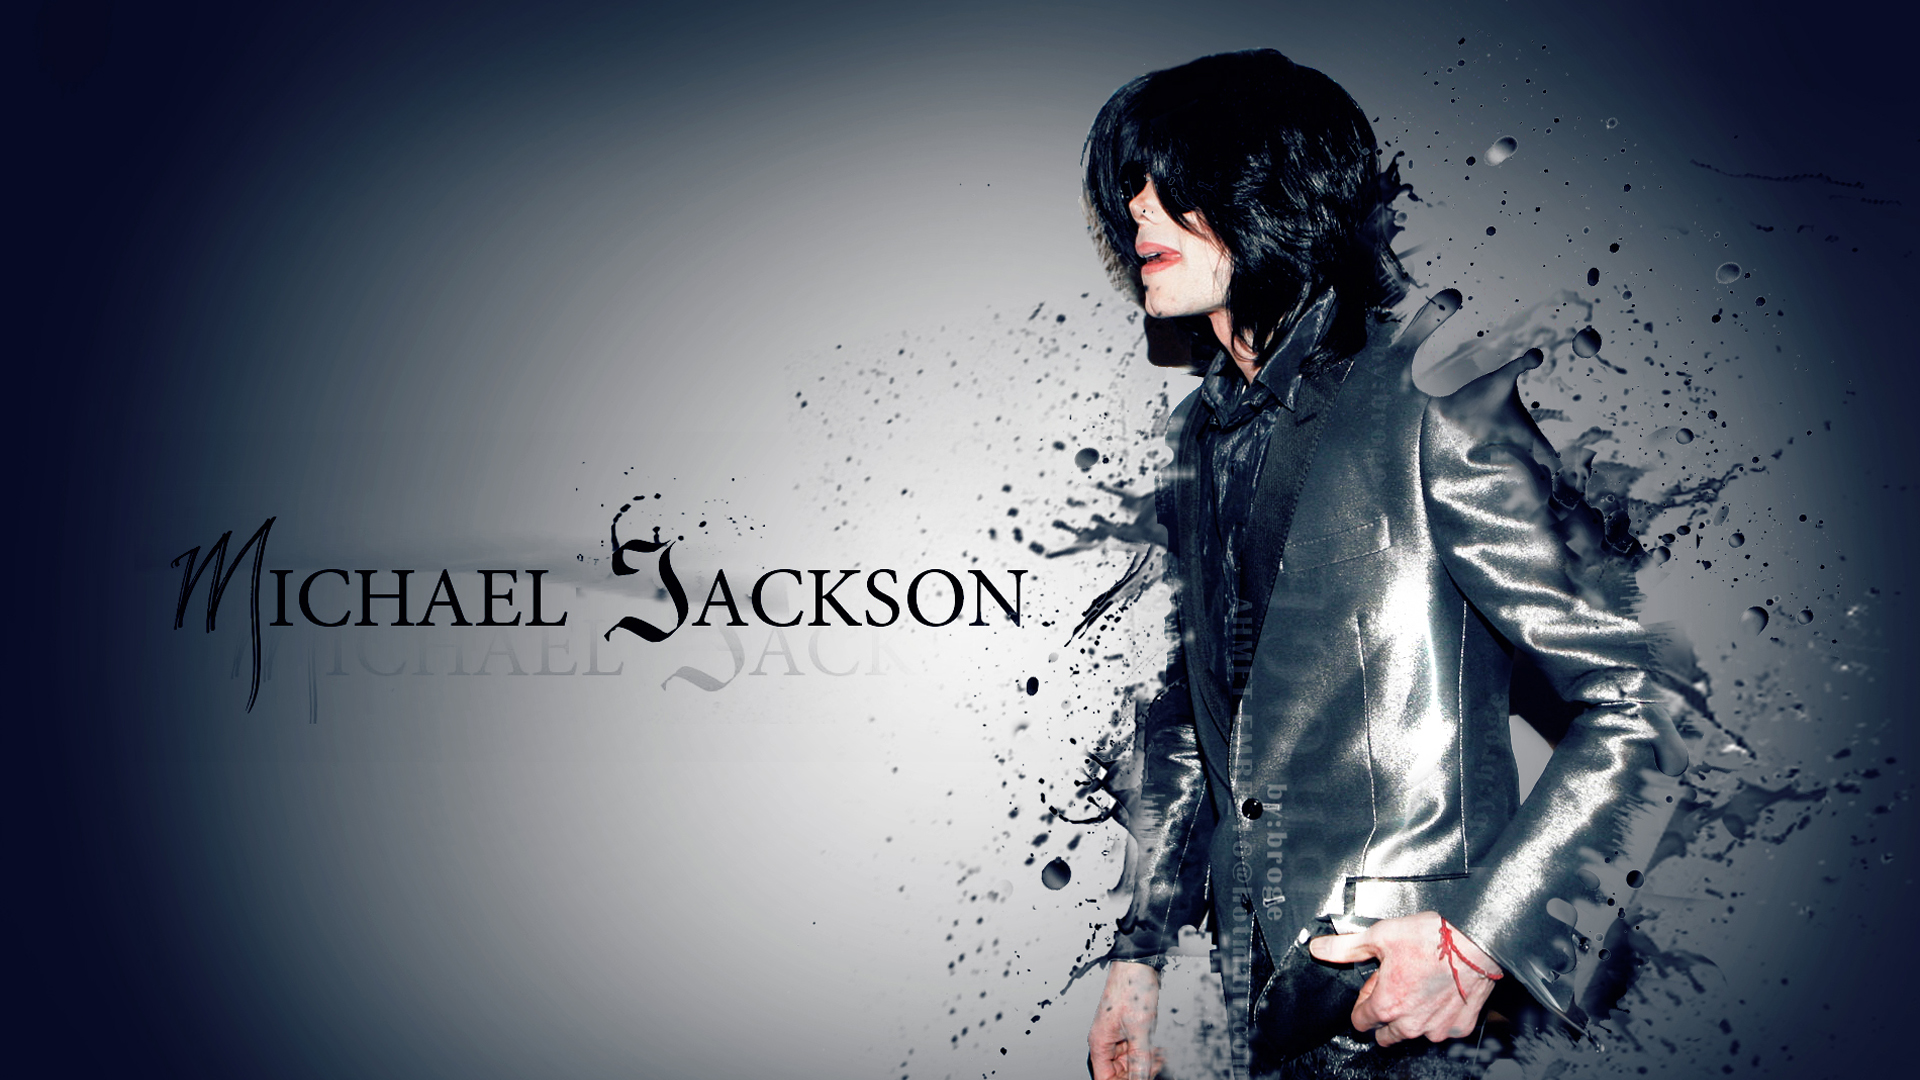 Michael Jackson With Black And Gray Dress 2K Michael Jackson